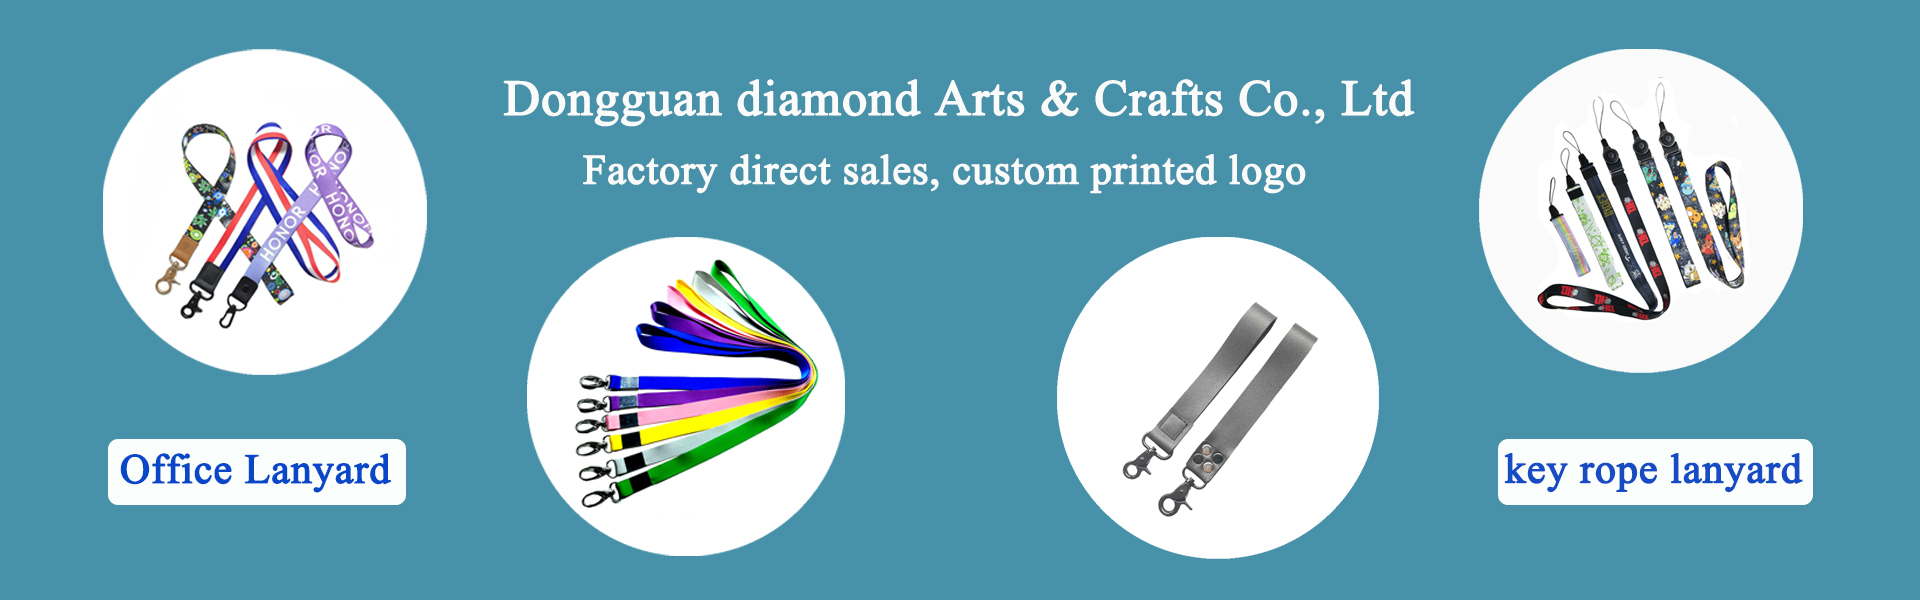 الحبل ، اكسسوارات الملابس ، منتجات الحيوانات الأليفة,Dongguan diamond Arts & Crafts Co., Ltd